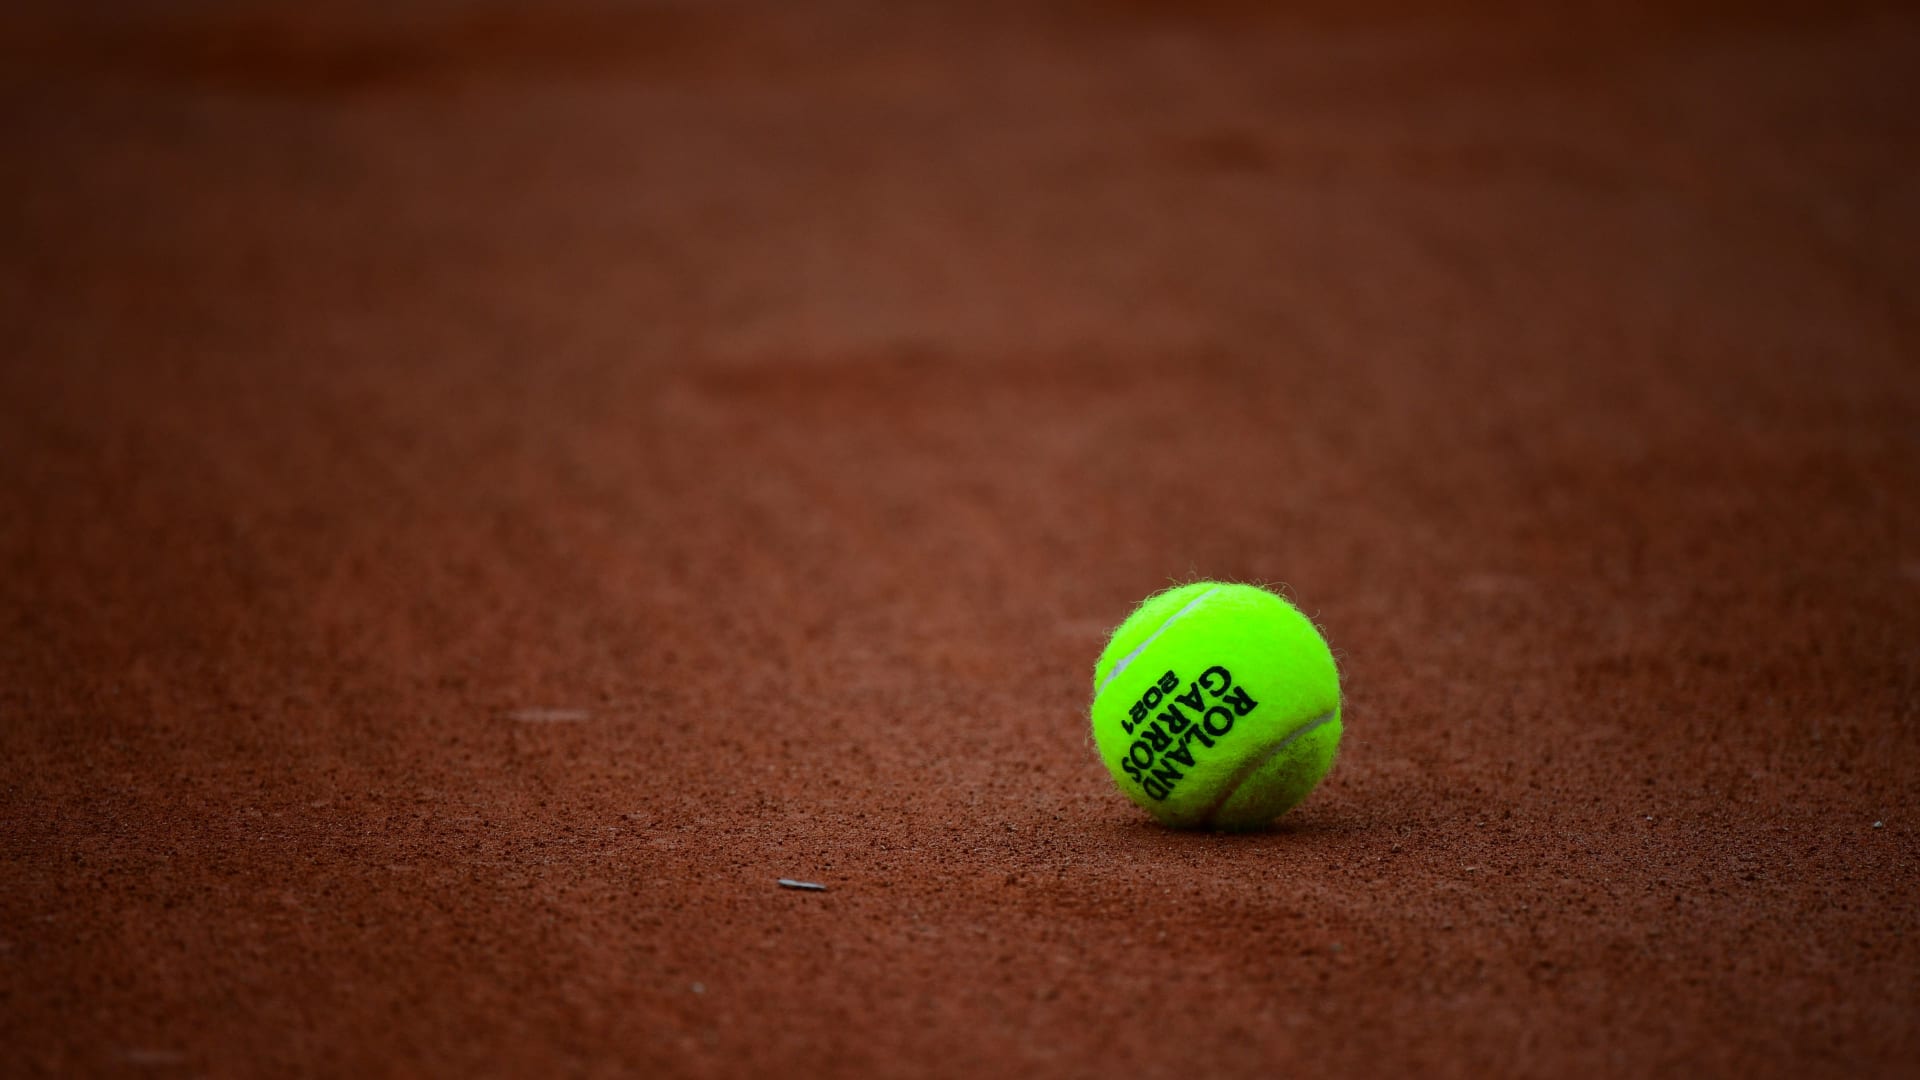 صورة للكرة الرسمية لبطولة التنس المفتوحة الفرنسية 2021 على سطح الملعب في اليوم السادس من بطولة فرنسا المفتوحة للتنس رولان جاروس 2021 في باريس في 4 يونيو